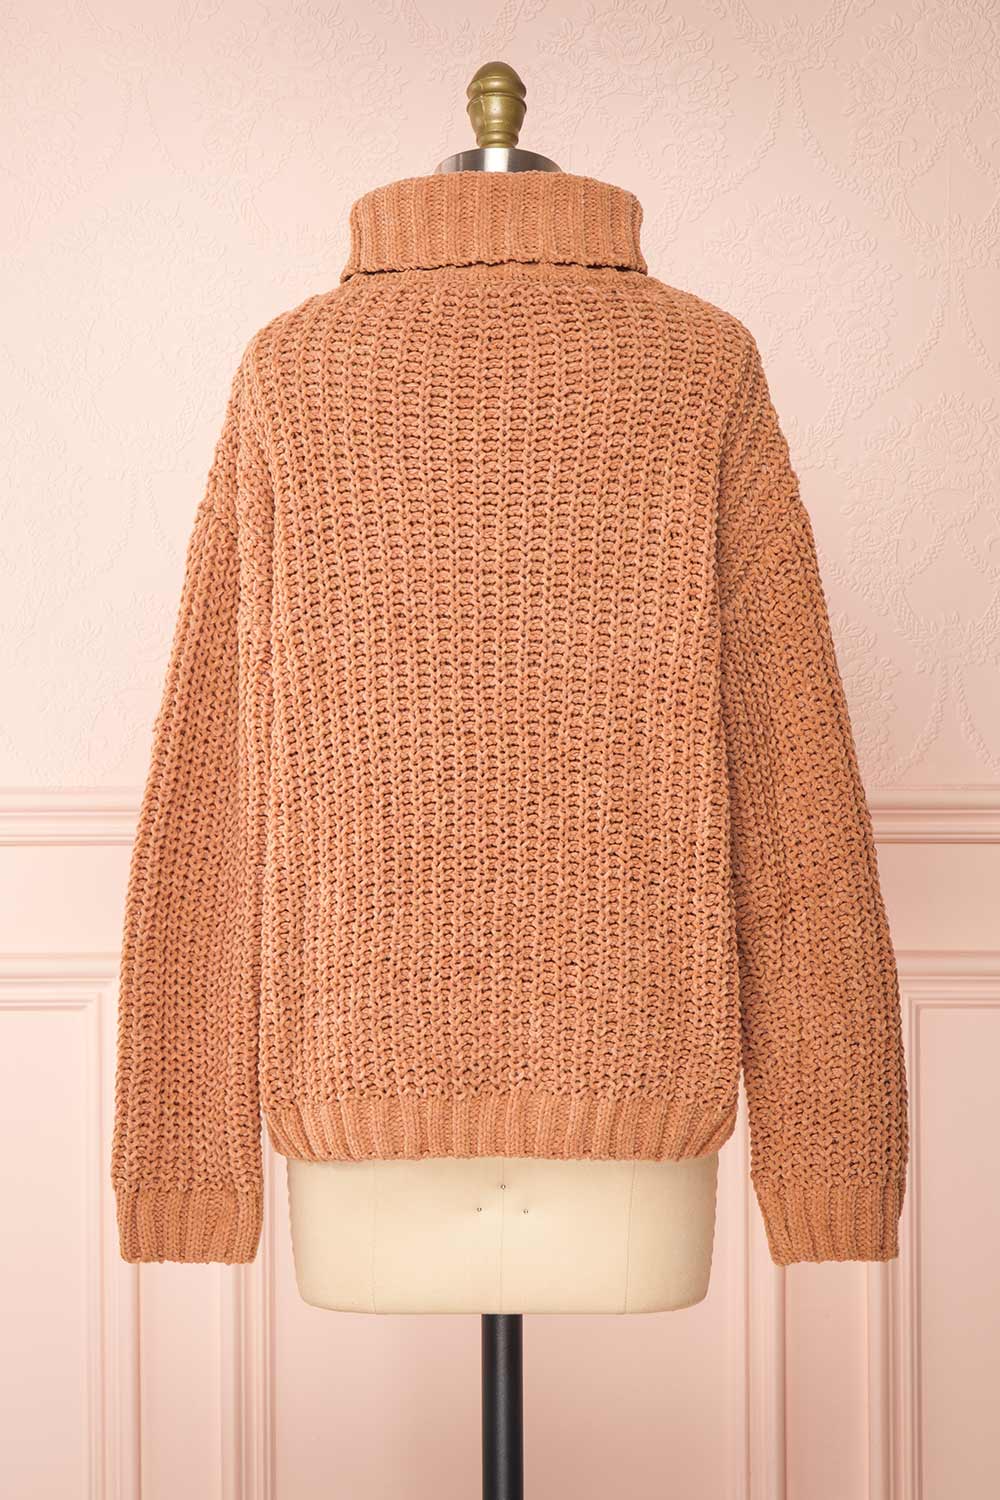 Irma Beige Turtleneck Knit Sweater | La petite garçonne back view 